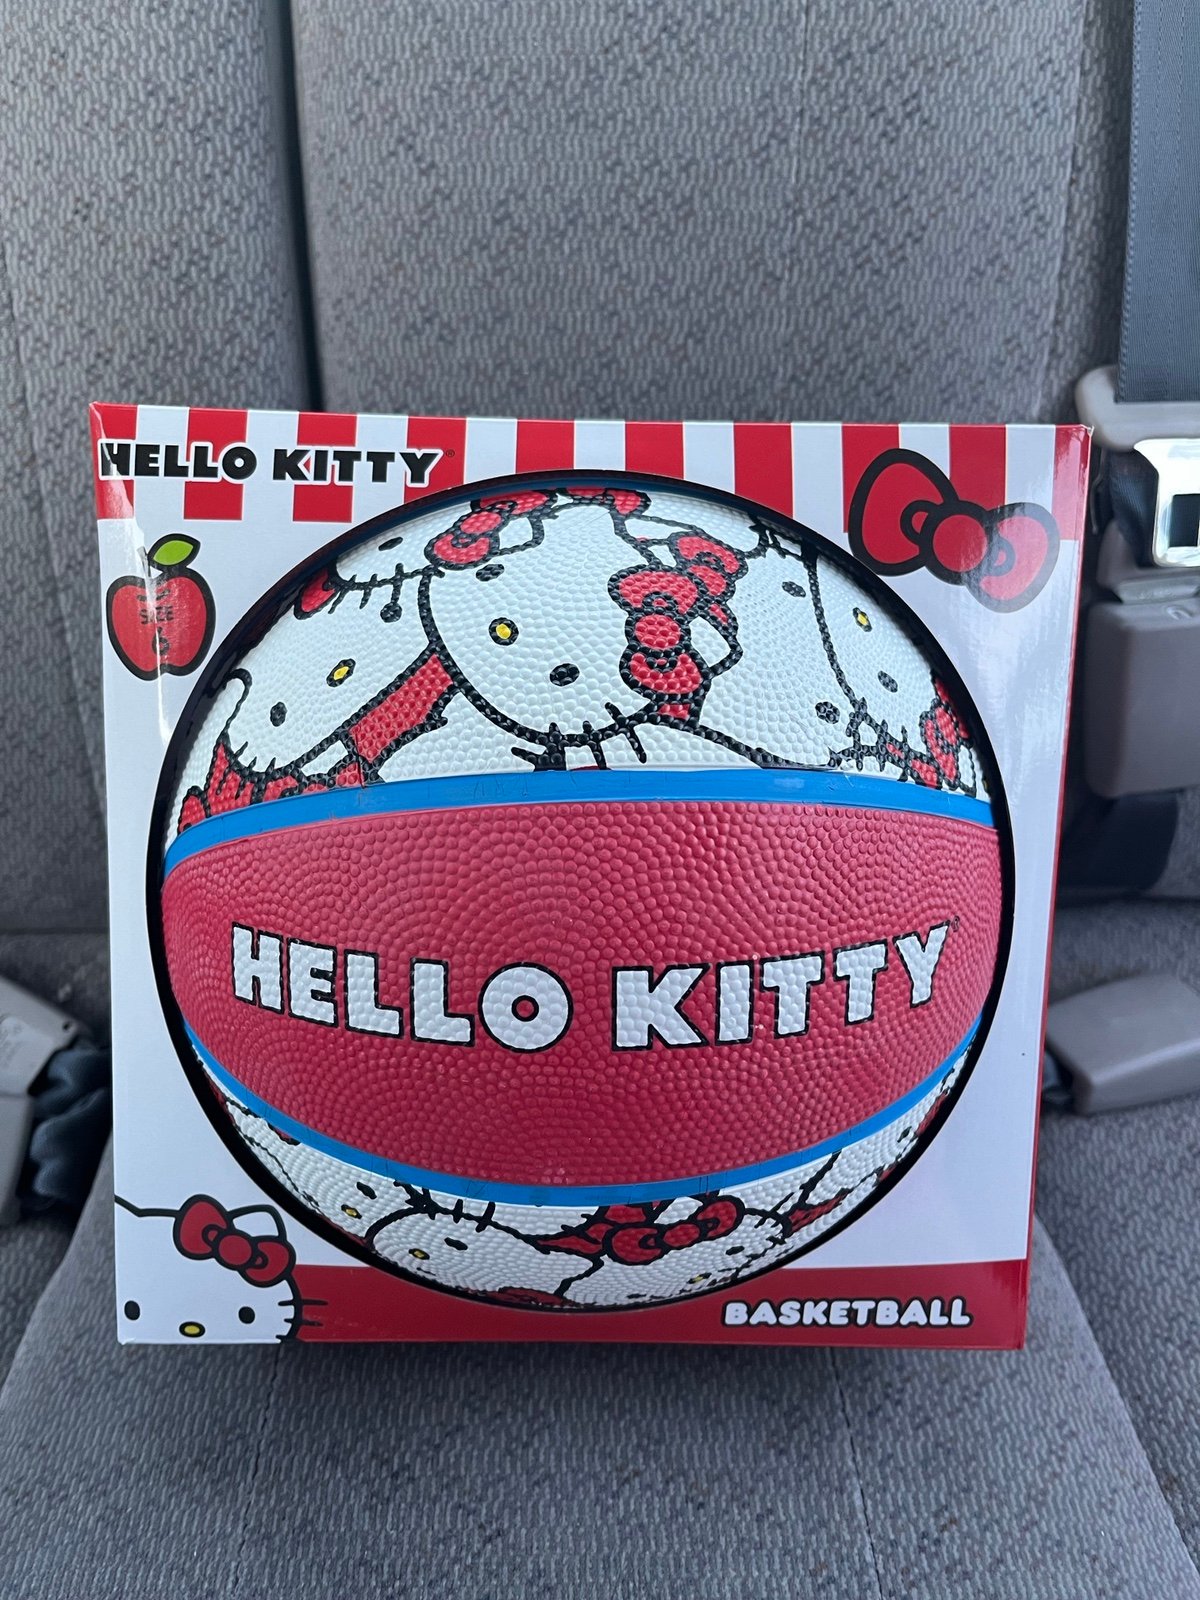 Hello Kitty basketball MwRlBqdgH